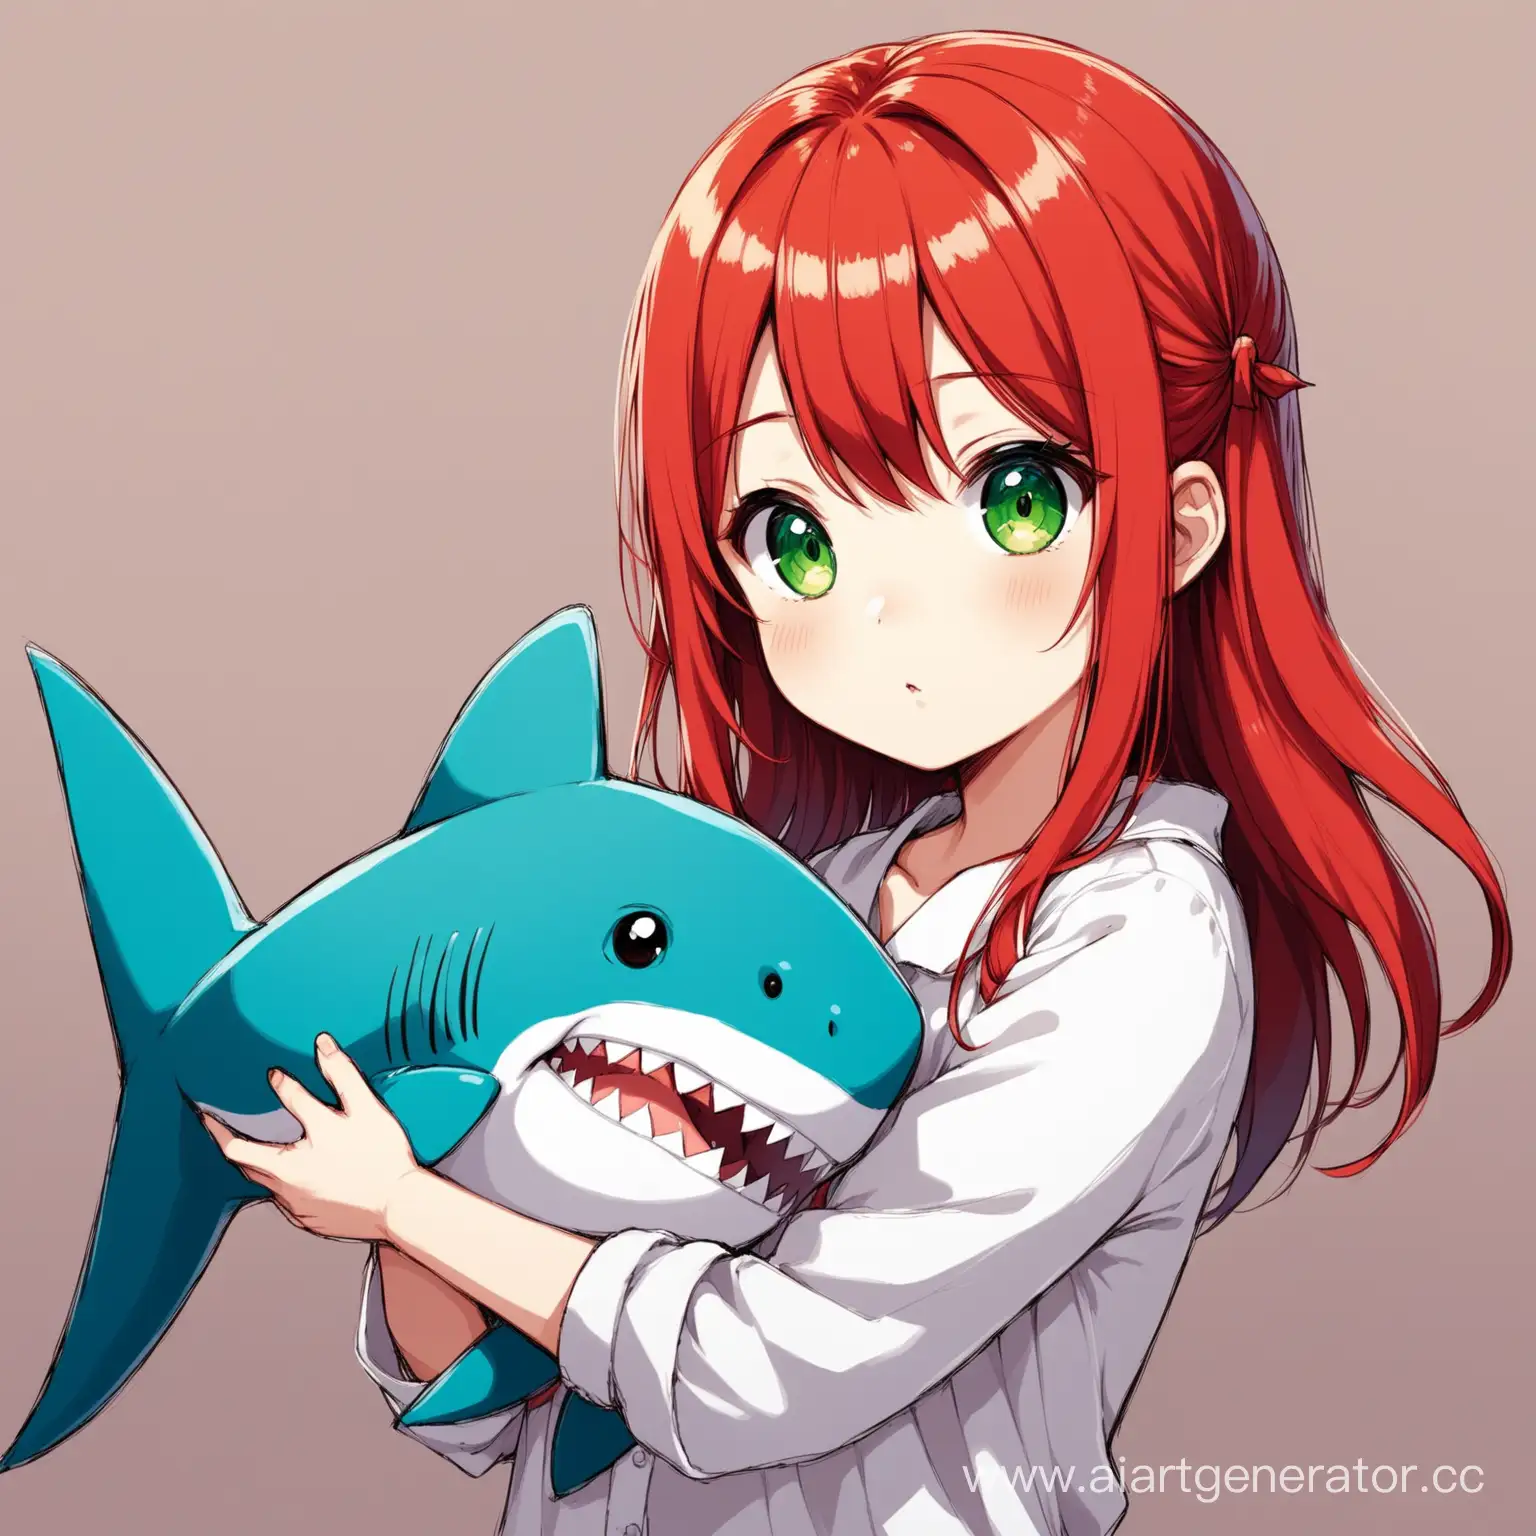 Рыжая девушка с зелёными глазами держит в руках мягкую игрушку акулу должна выглядеть как из аниме, быть чуть дальше и смотрит на нас